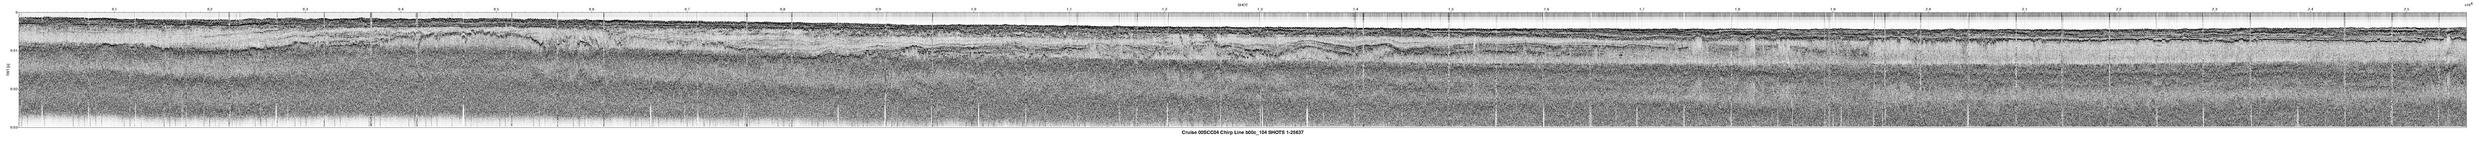 00SCC04 b00c_104 seismic profile image